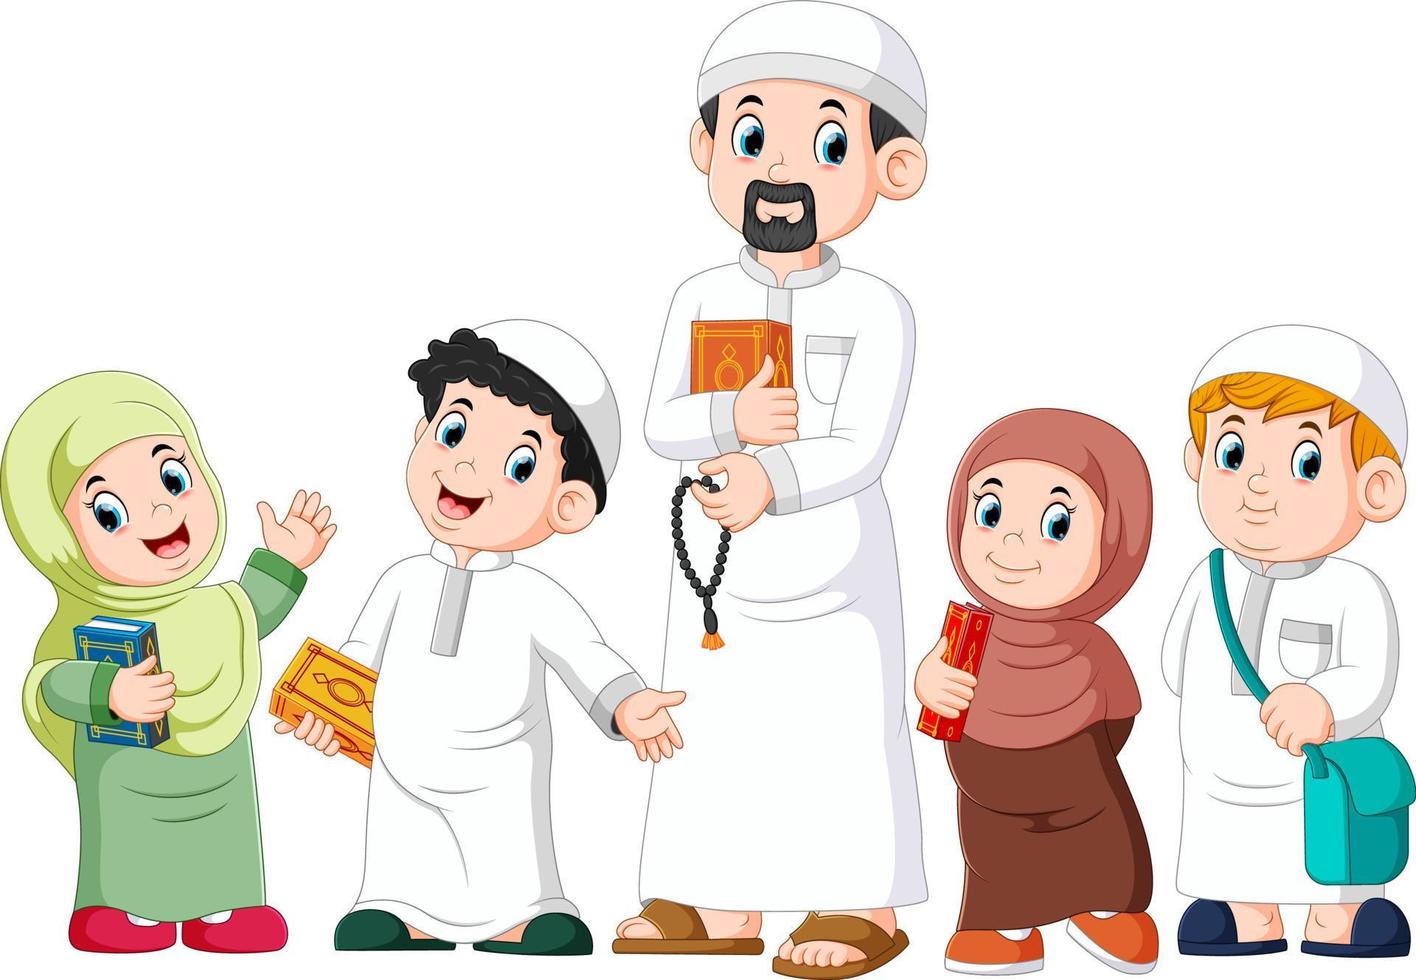 gelukkig moslim kind dat de heilige koran vasthoudt vector